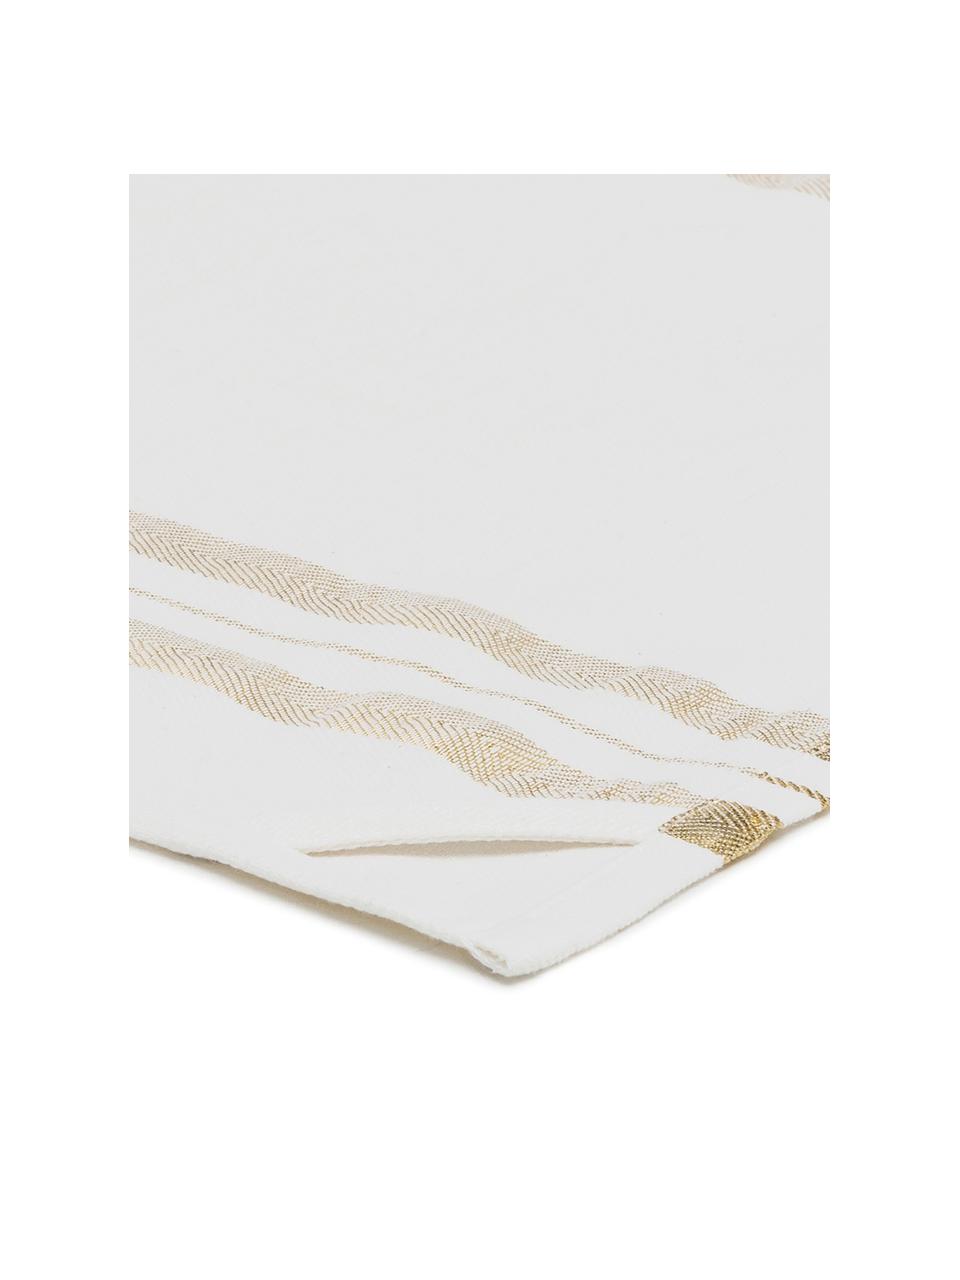 Geschirrtuch Corinne mit goldenen Details, Baumwolle, Weiß, Goldfarben, 50 x 70 cm